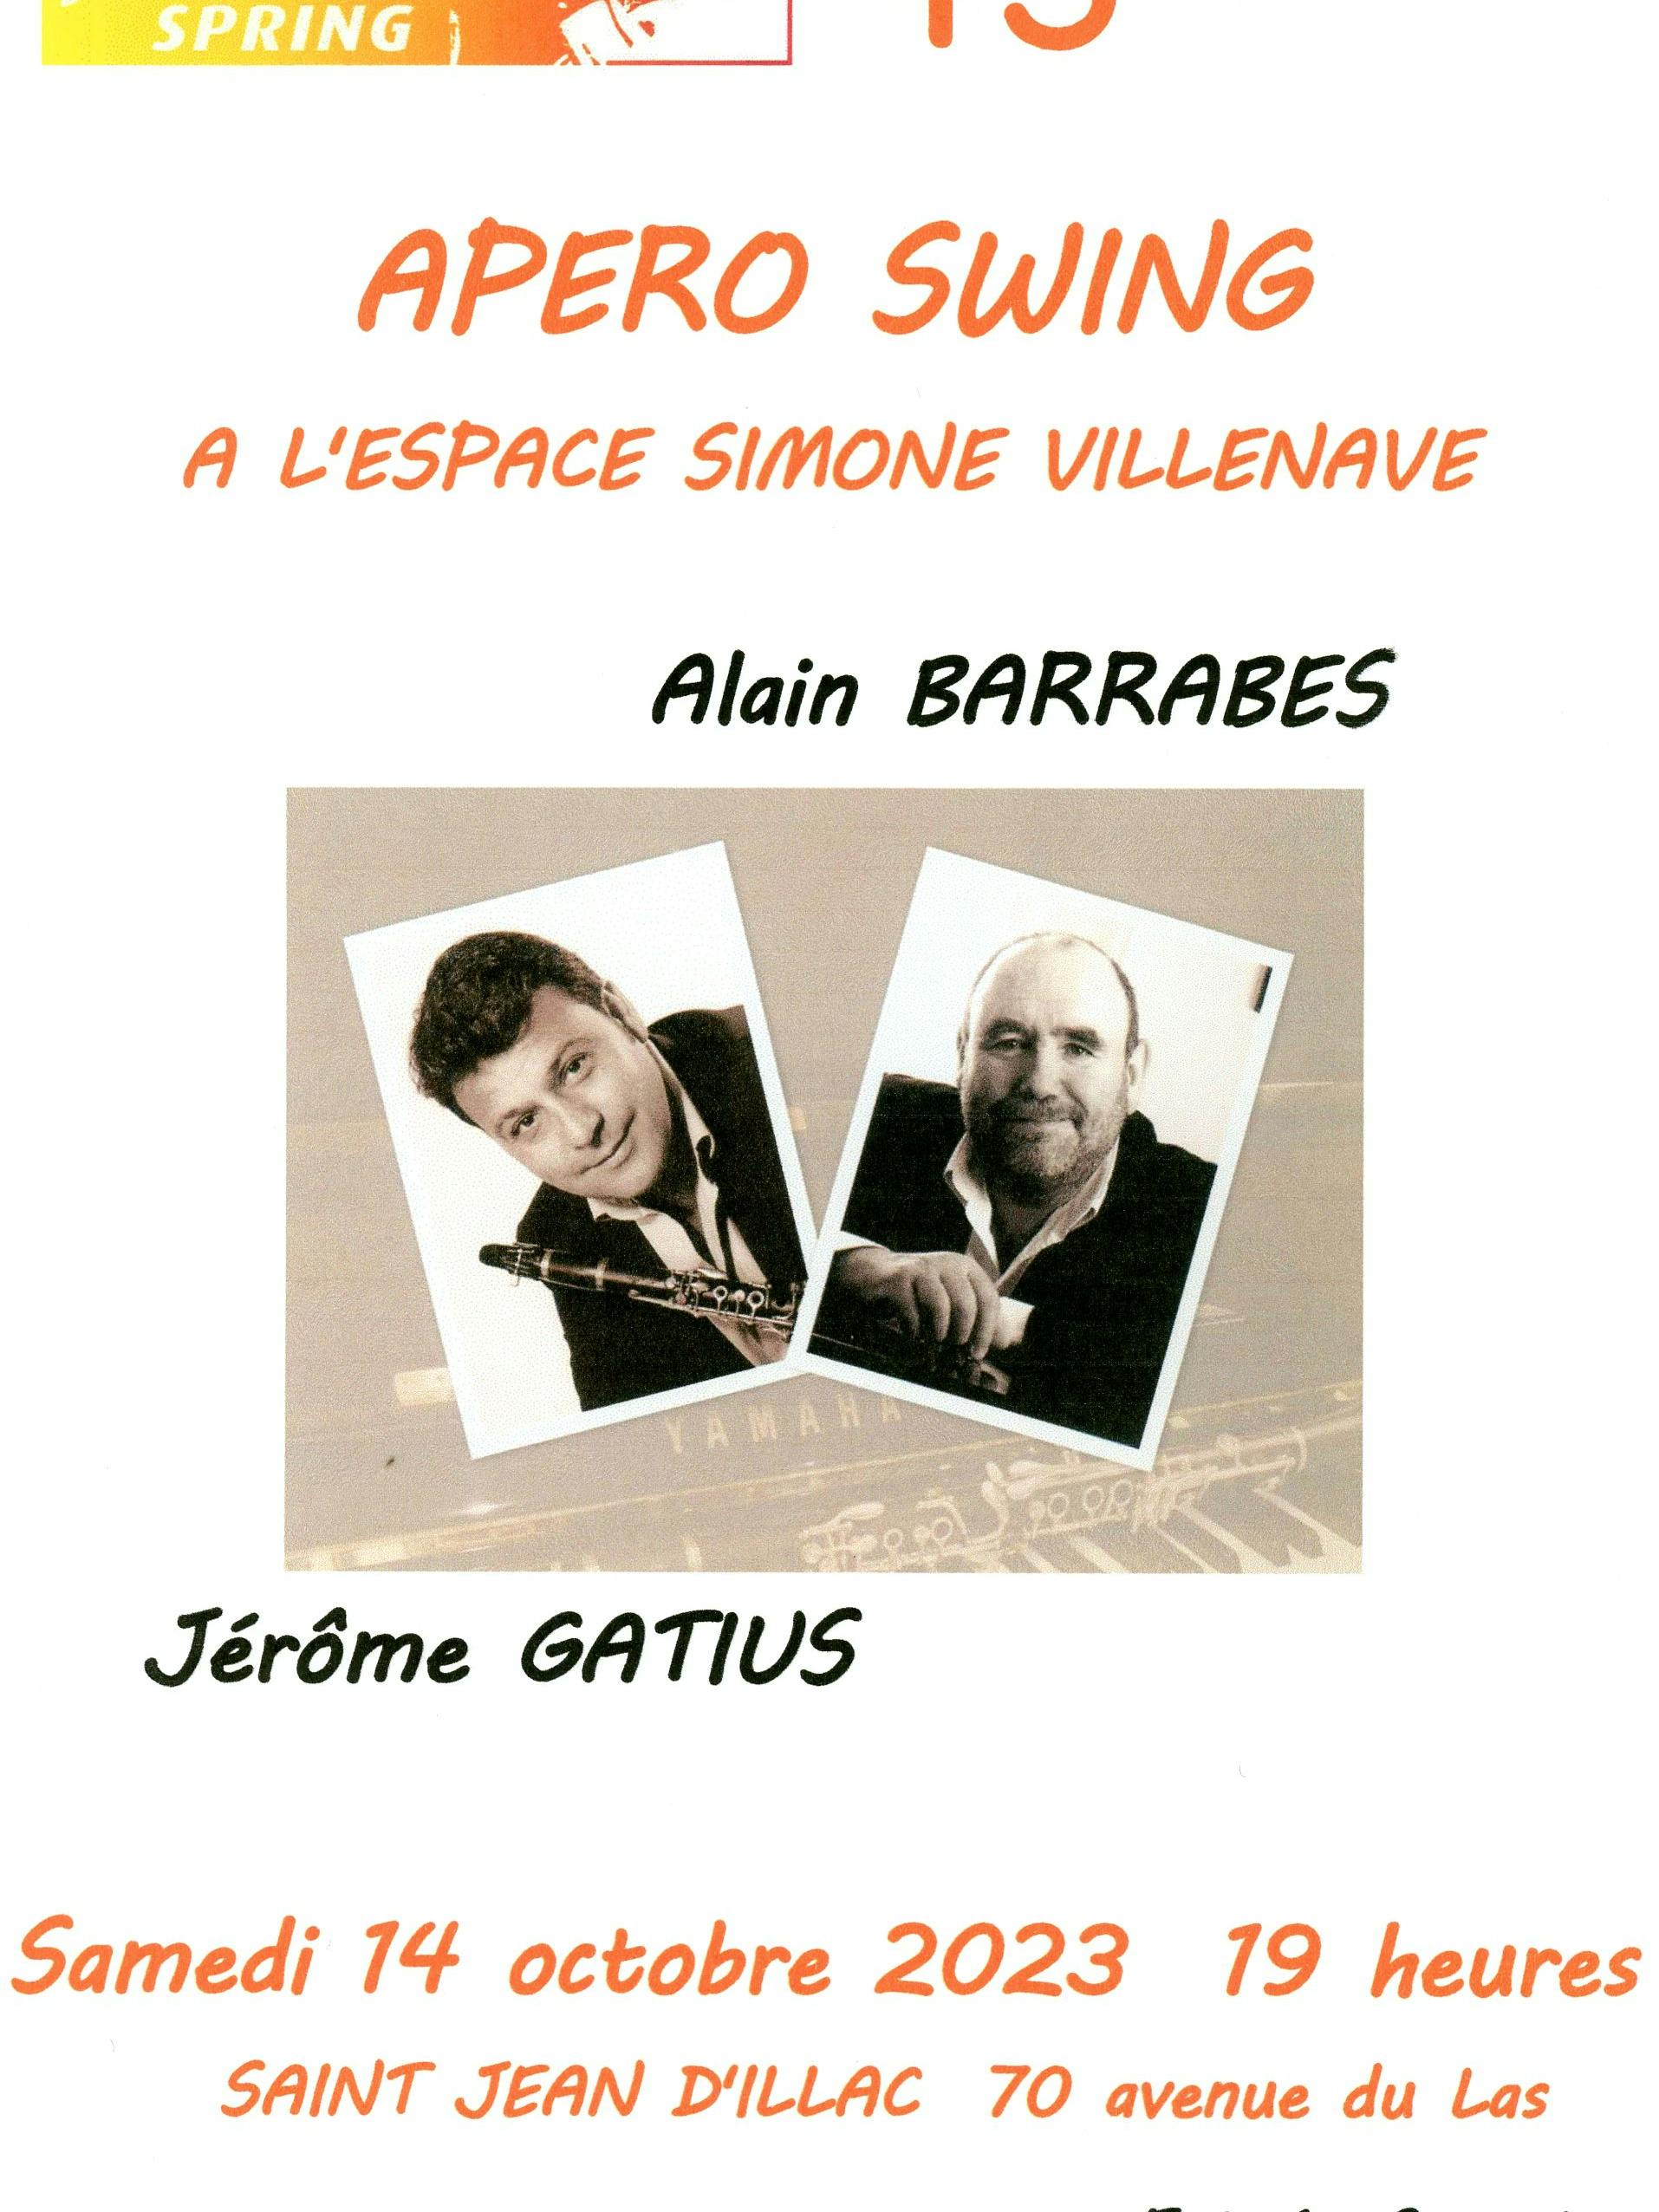 APERO SWING Alain BARRABES Jérôme GATIUS